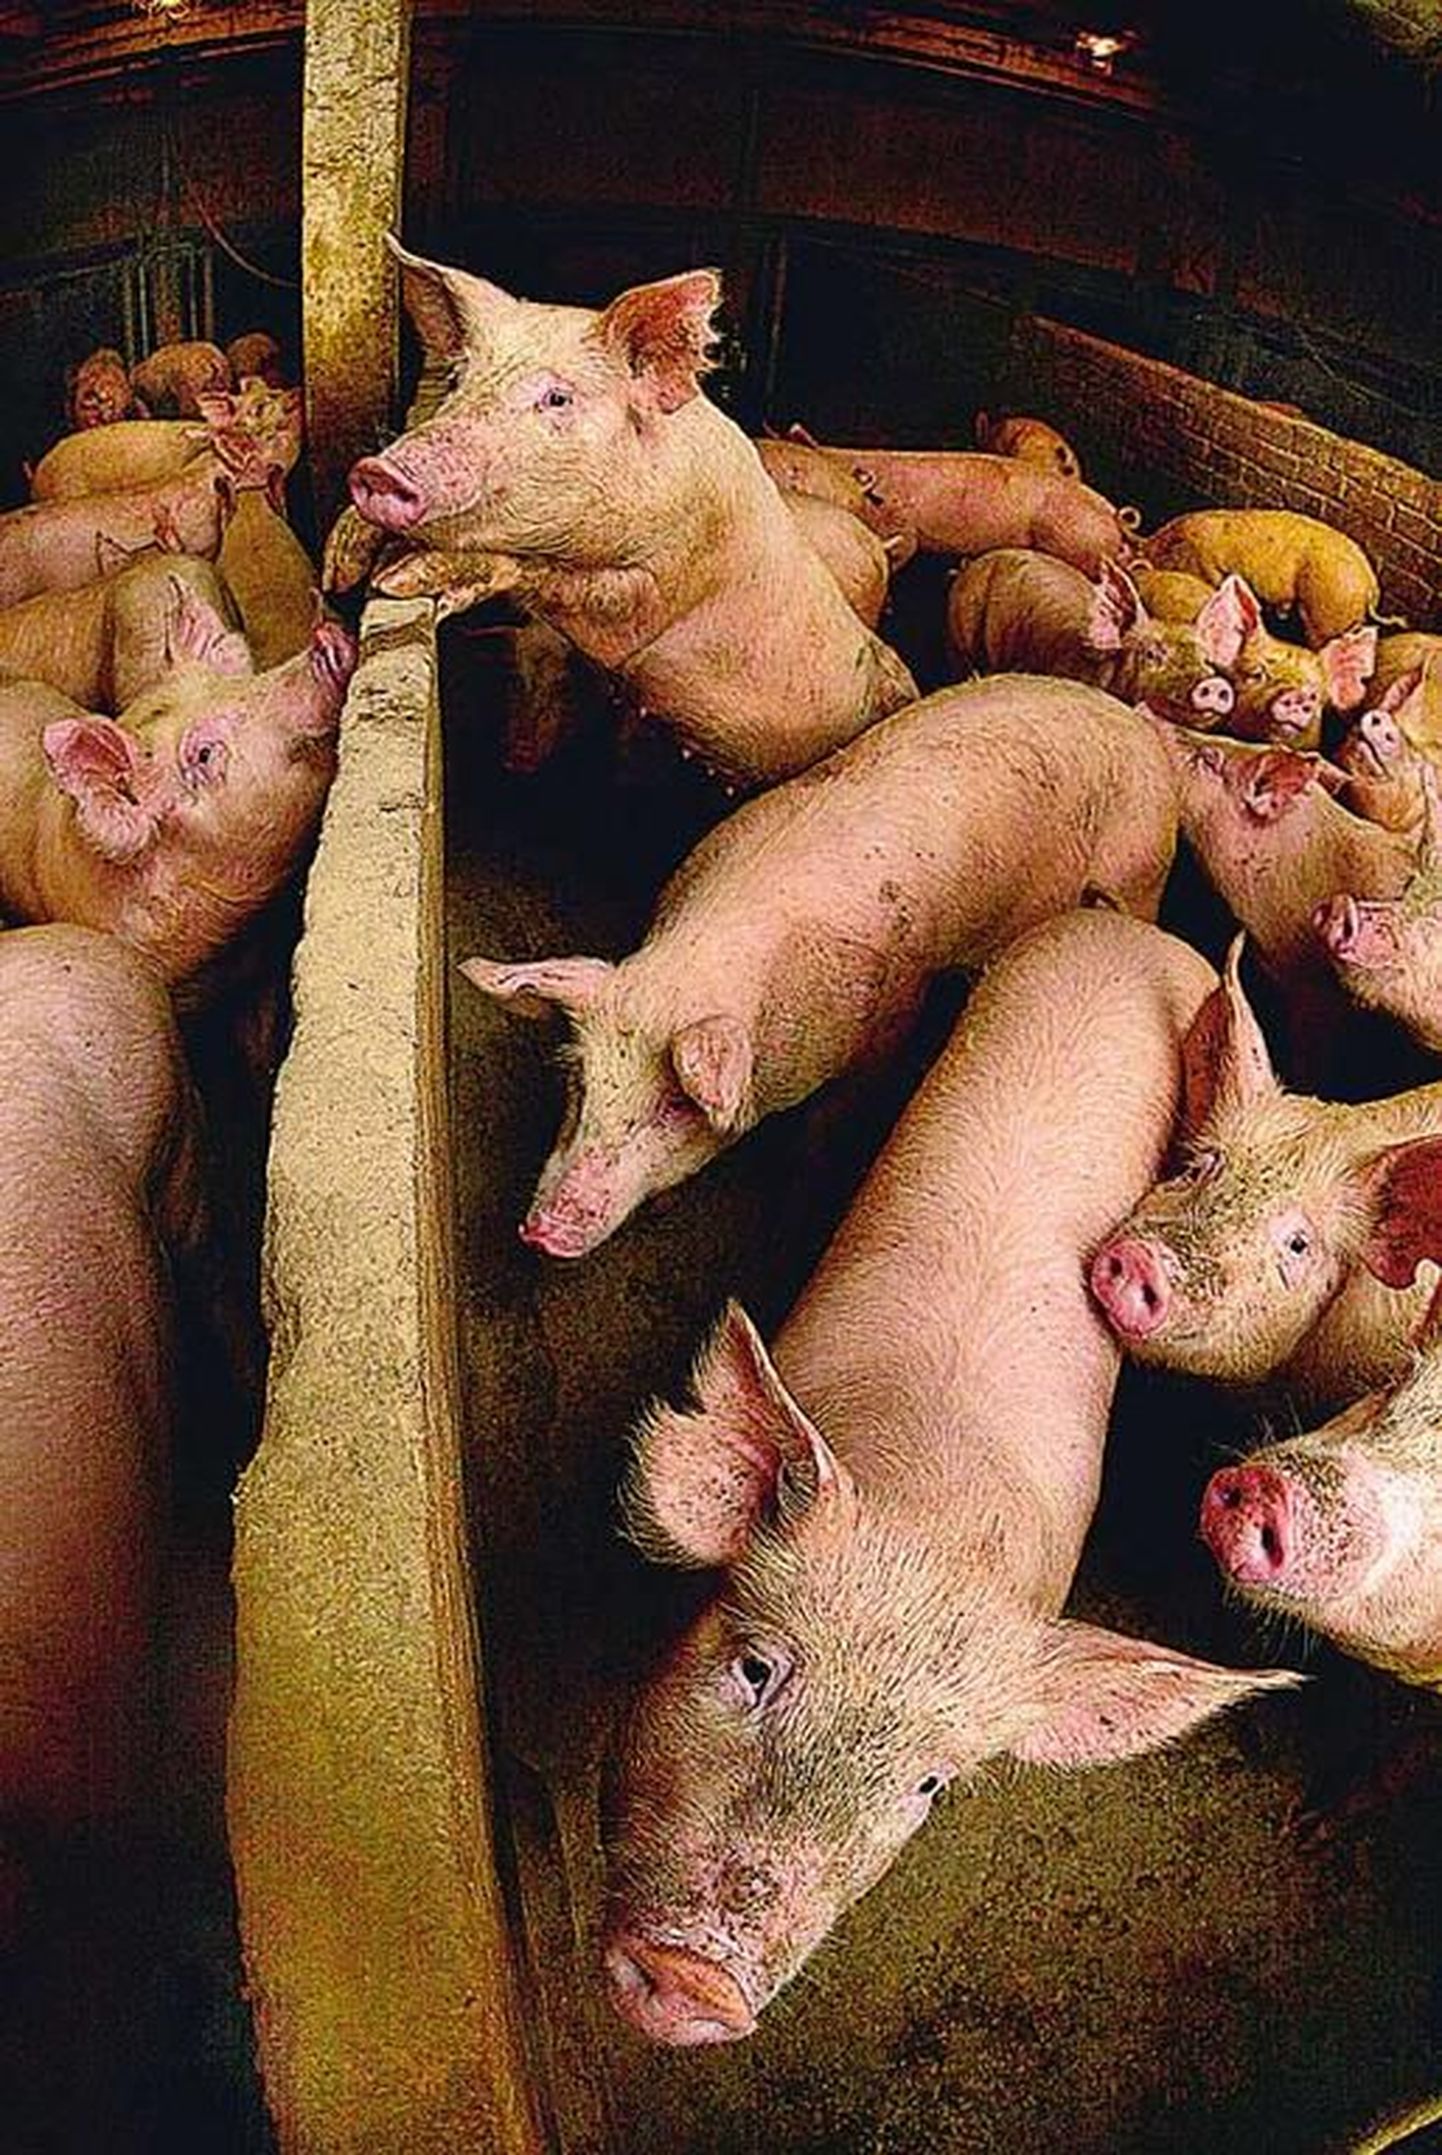 Lihatööstuste survel eelistavad farmerid kasvatada pekivaeseid sigu, kelle liha ei kõlba kõikidesse vorstisortidesse